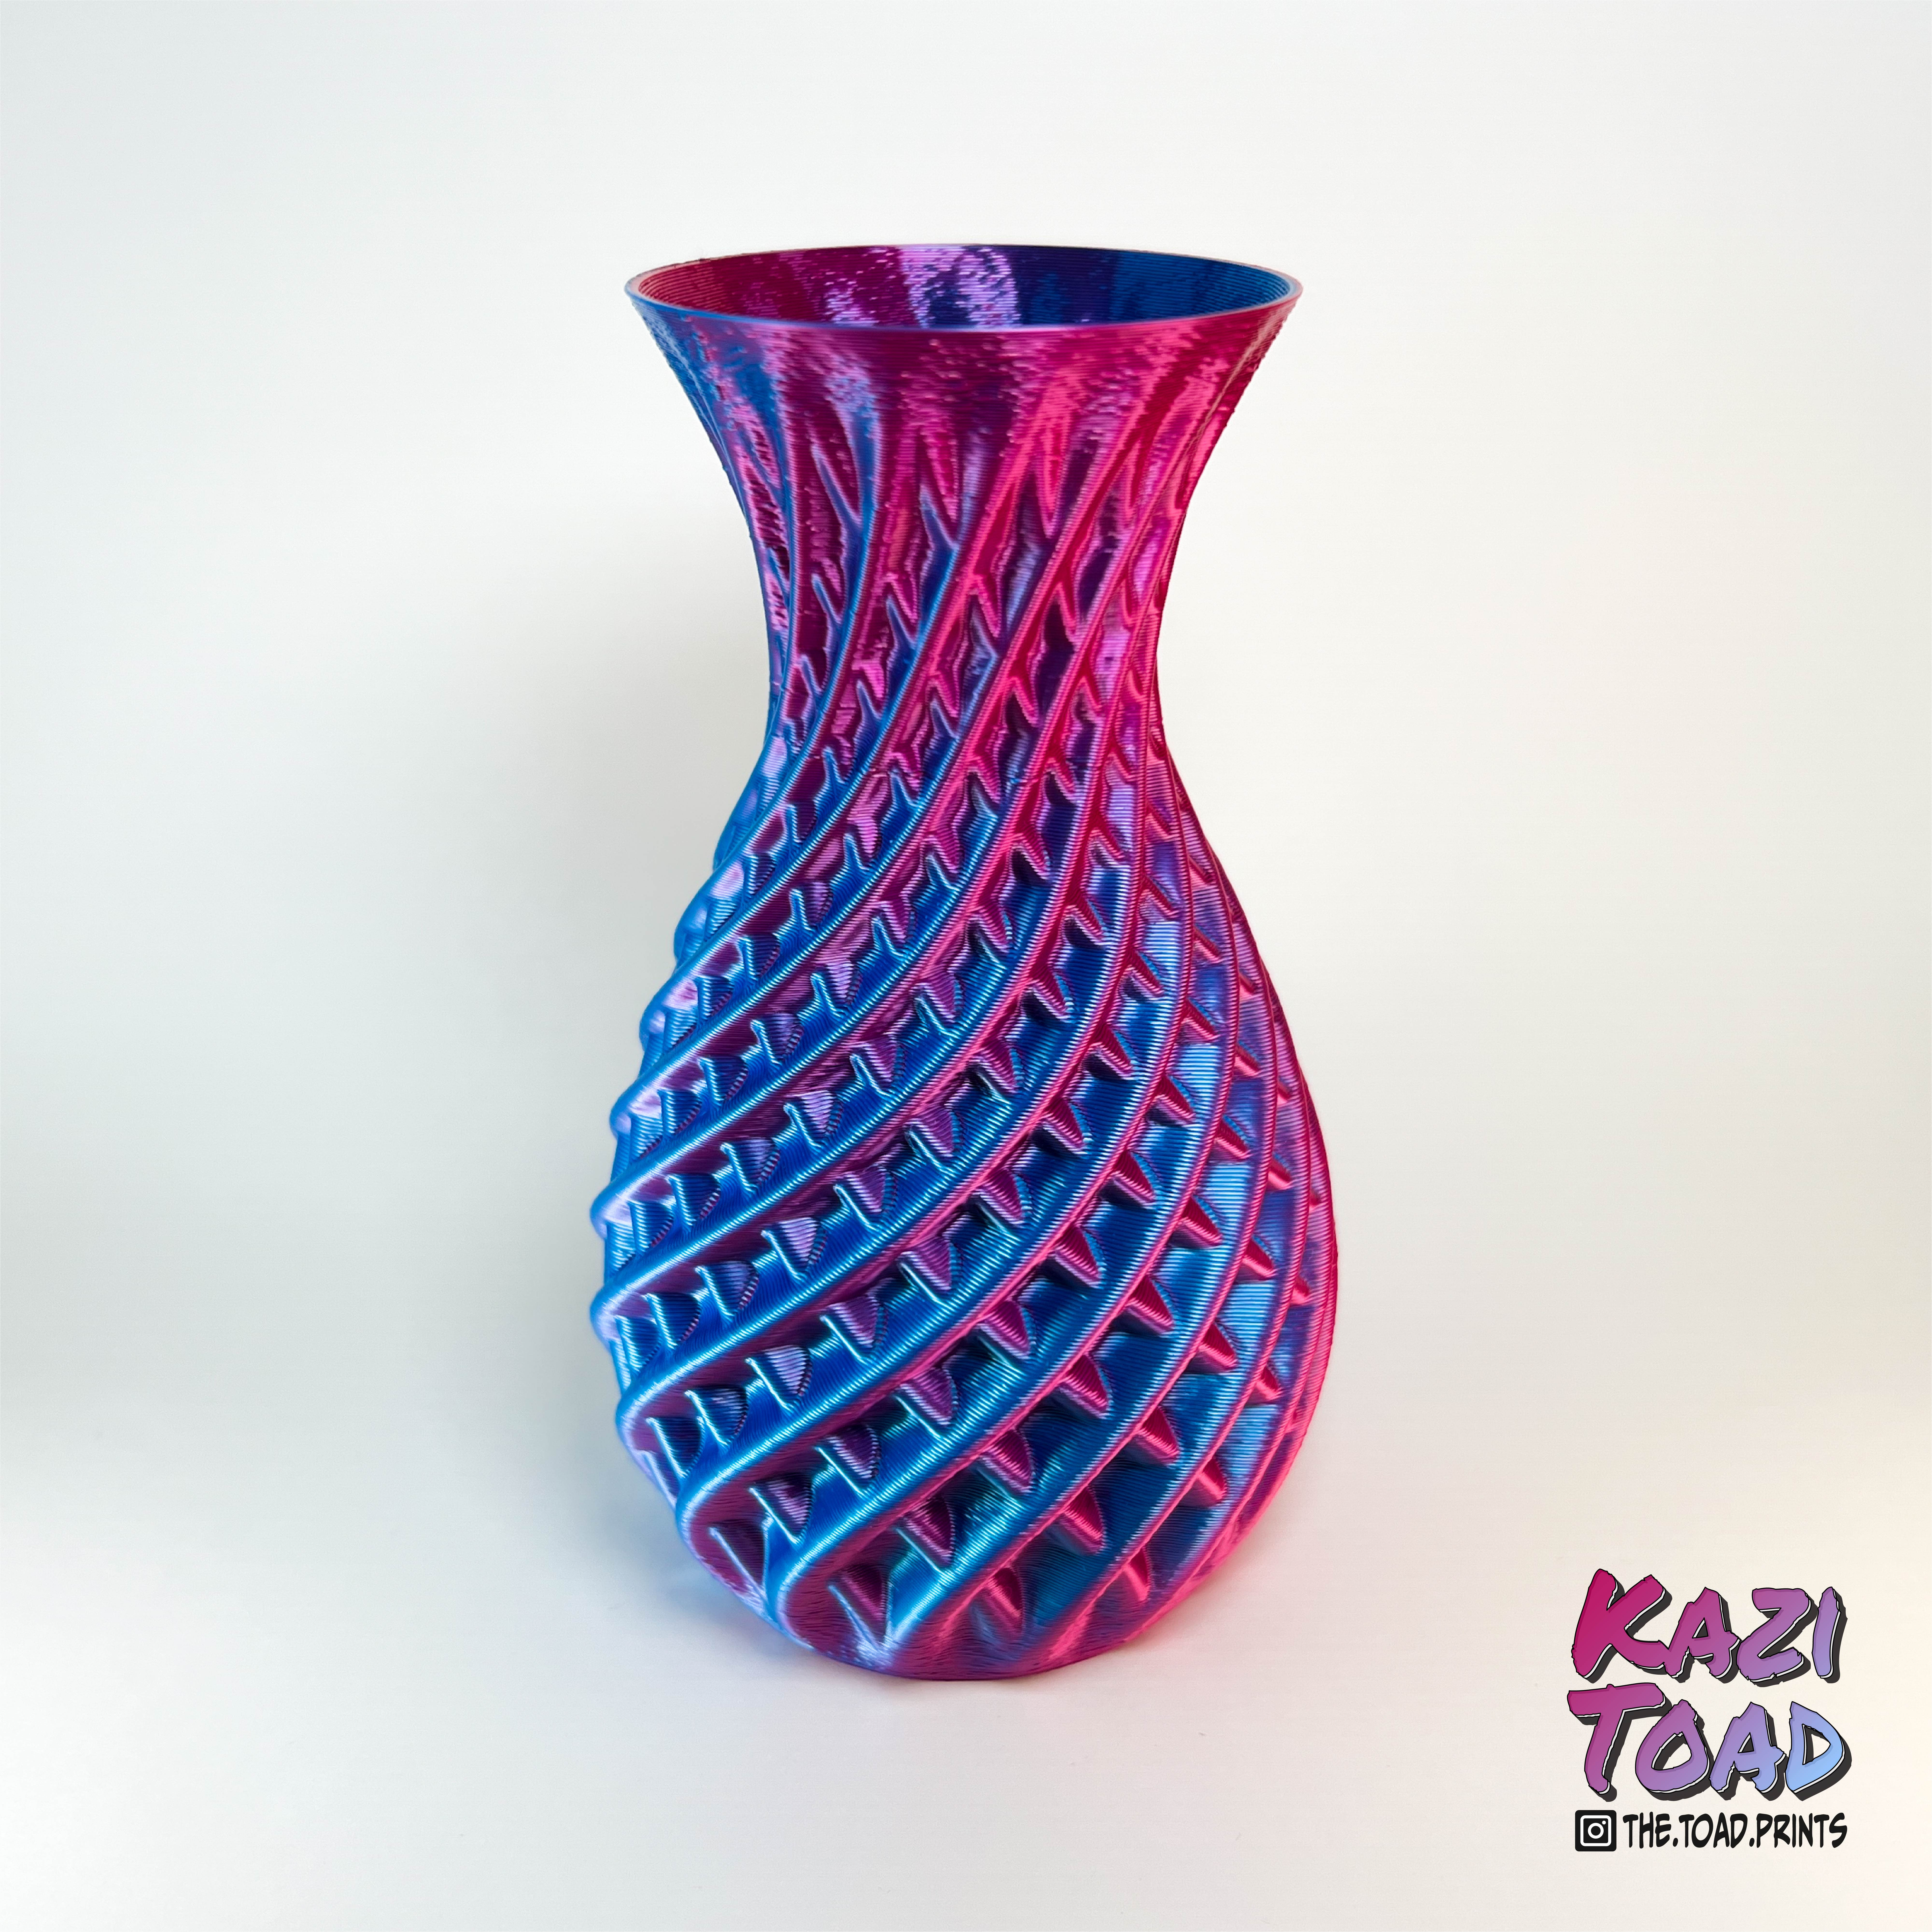 Double Twist Vase (Vase No. 5)